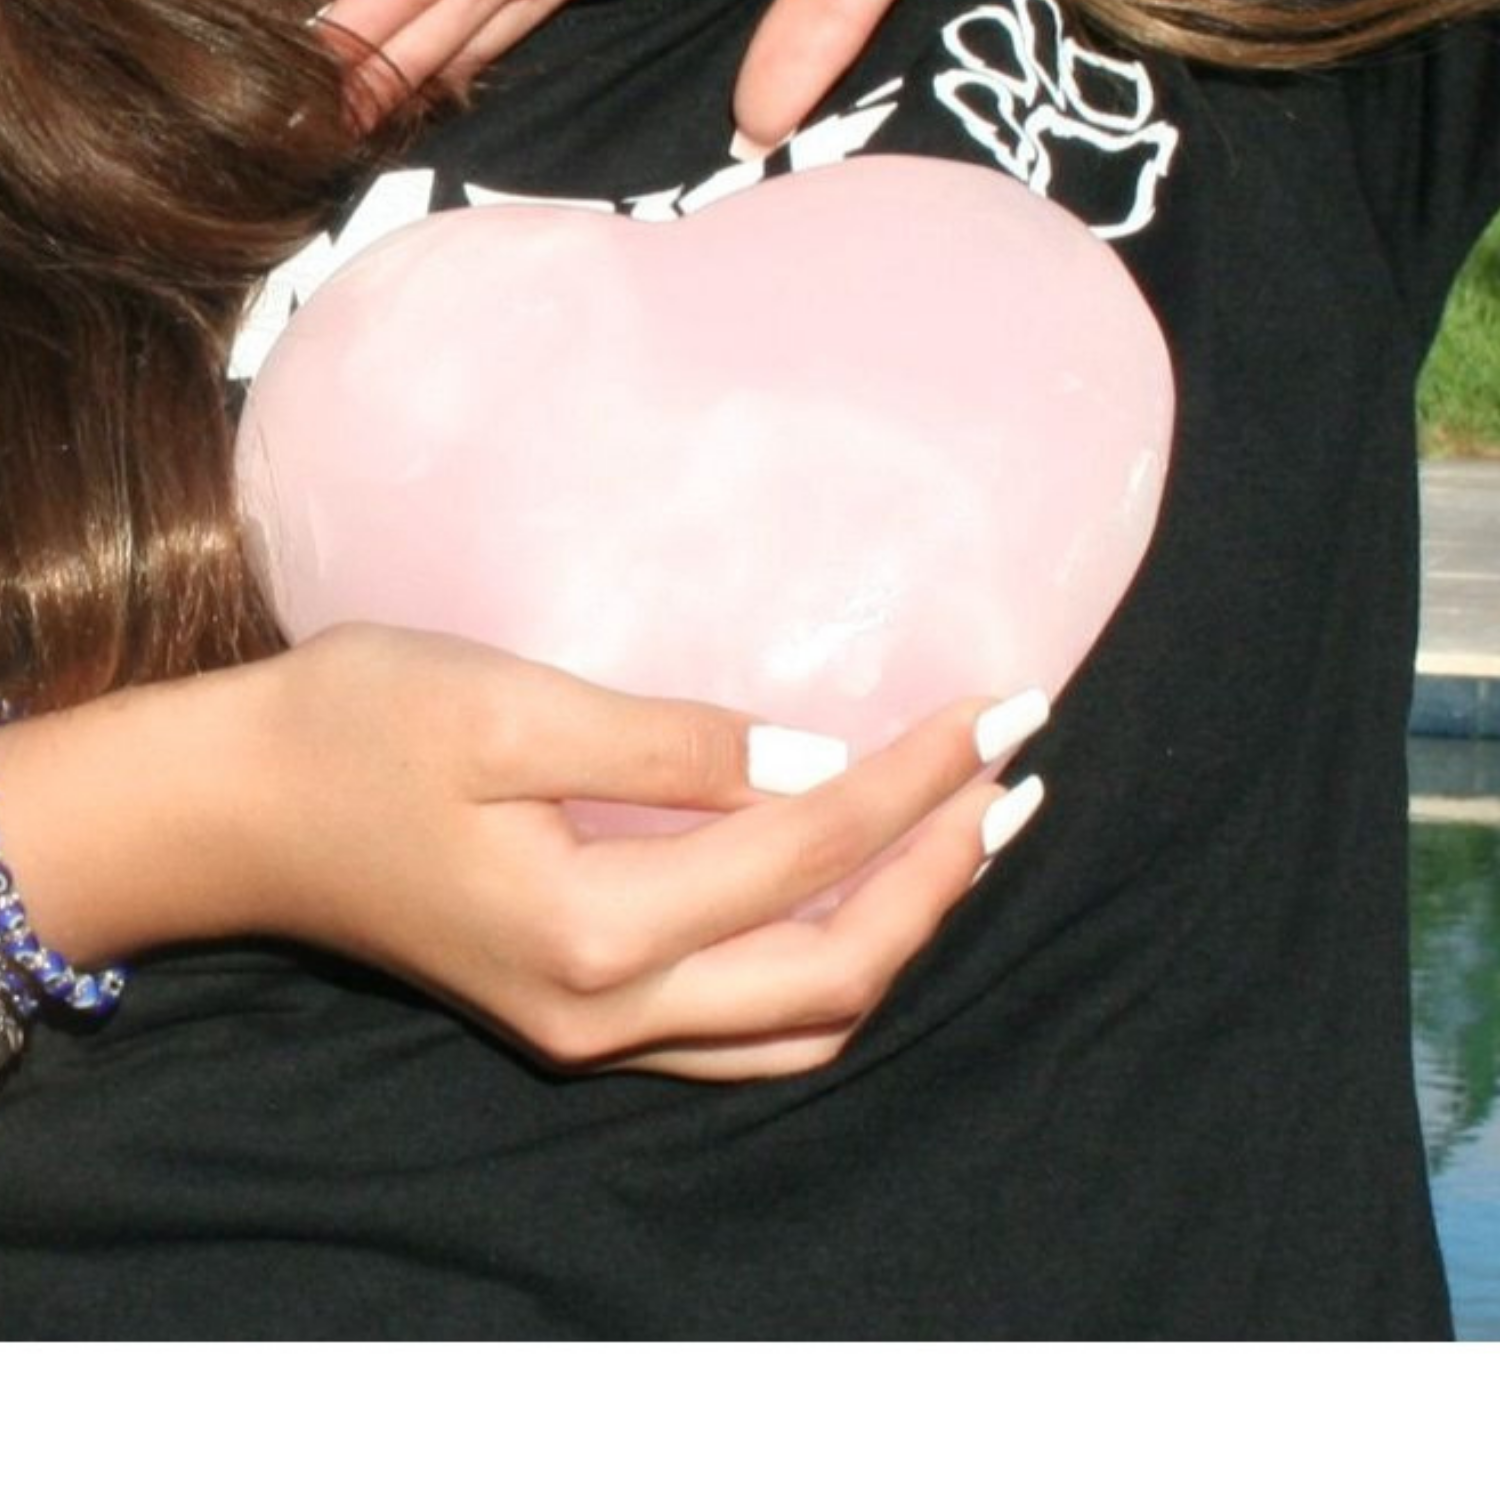 Pink Calcite Heart - Mangano Calcite Heart